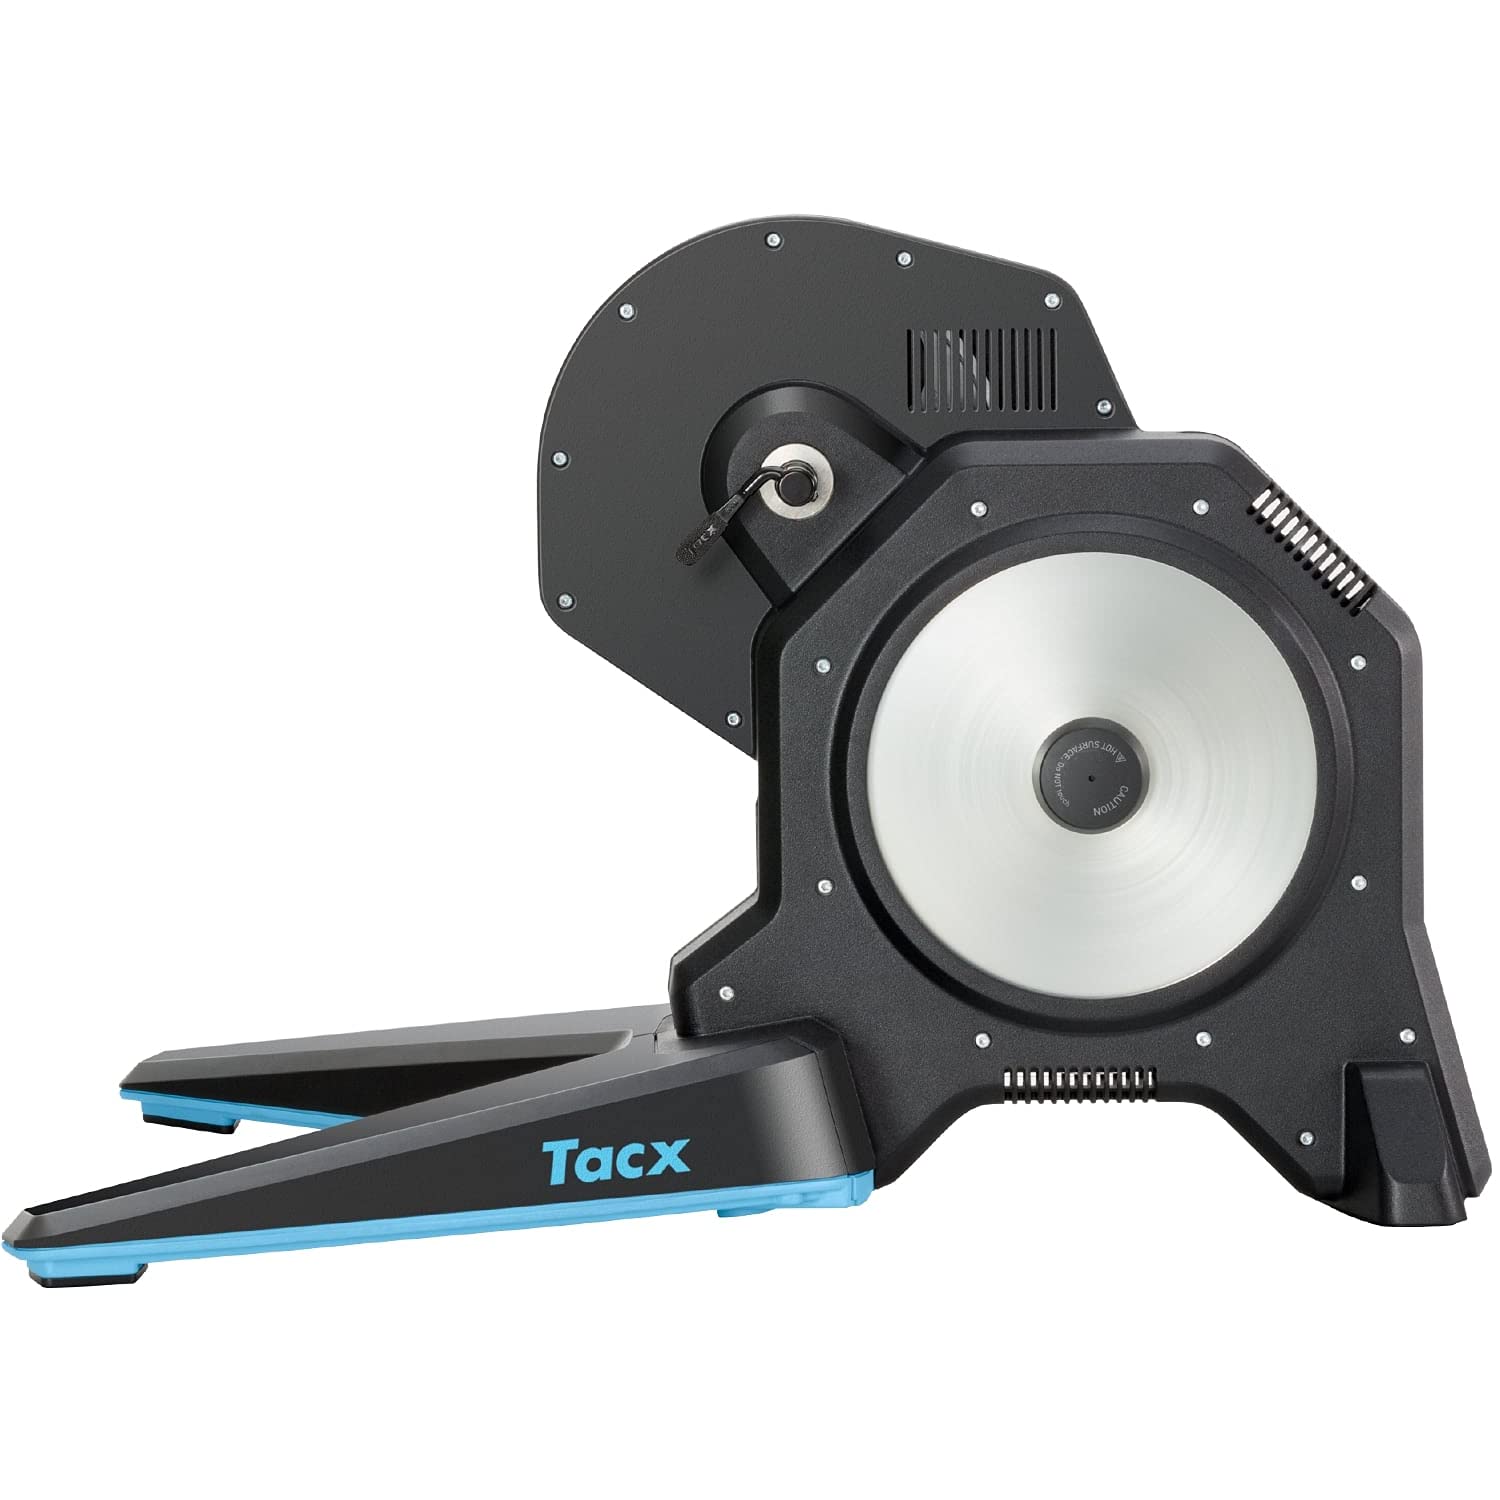 TACX FLUX 2 Smart Trainer – 2000W Widerstand, 16 % max. Steigung, ANT+/Bluetooth Technologie für Zwift, TACX etc., Daten zu Geschwindigkeit/Trittfrequenz/Leistung, realistisch, leise und präzise